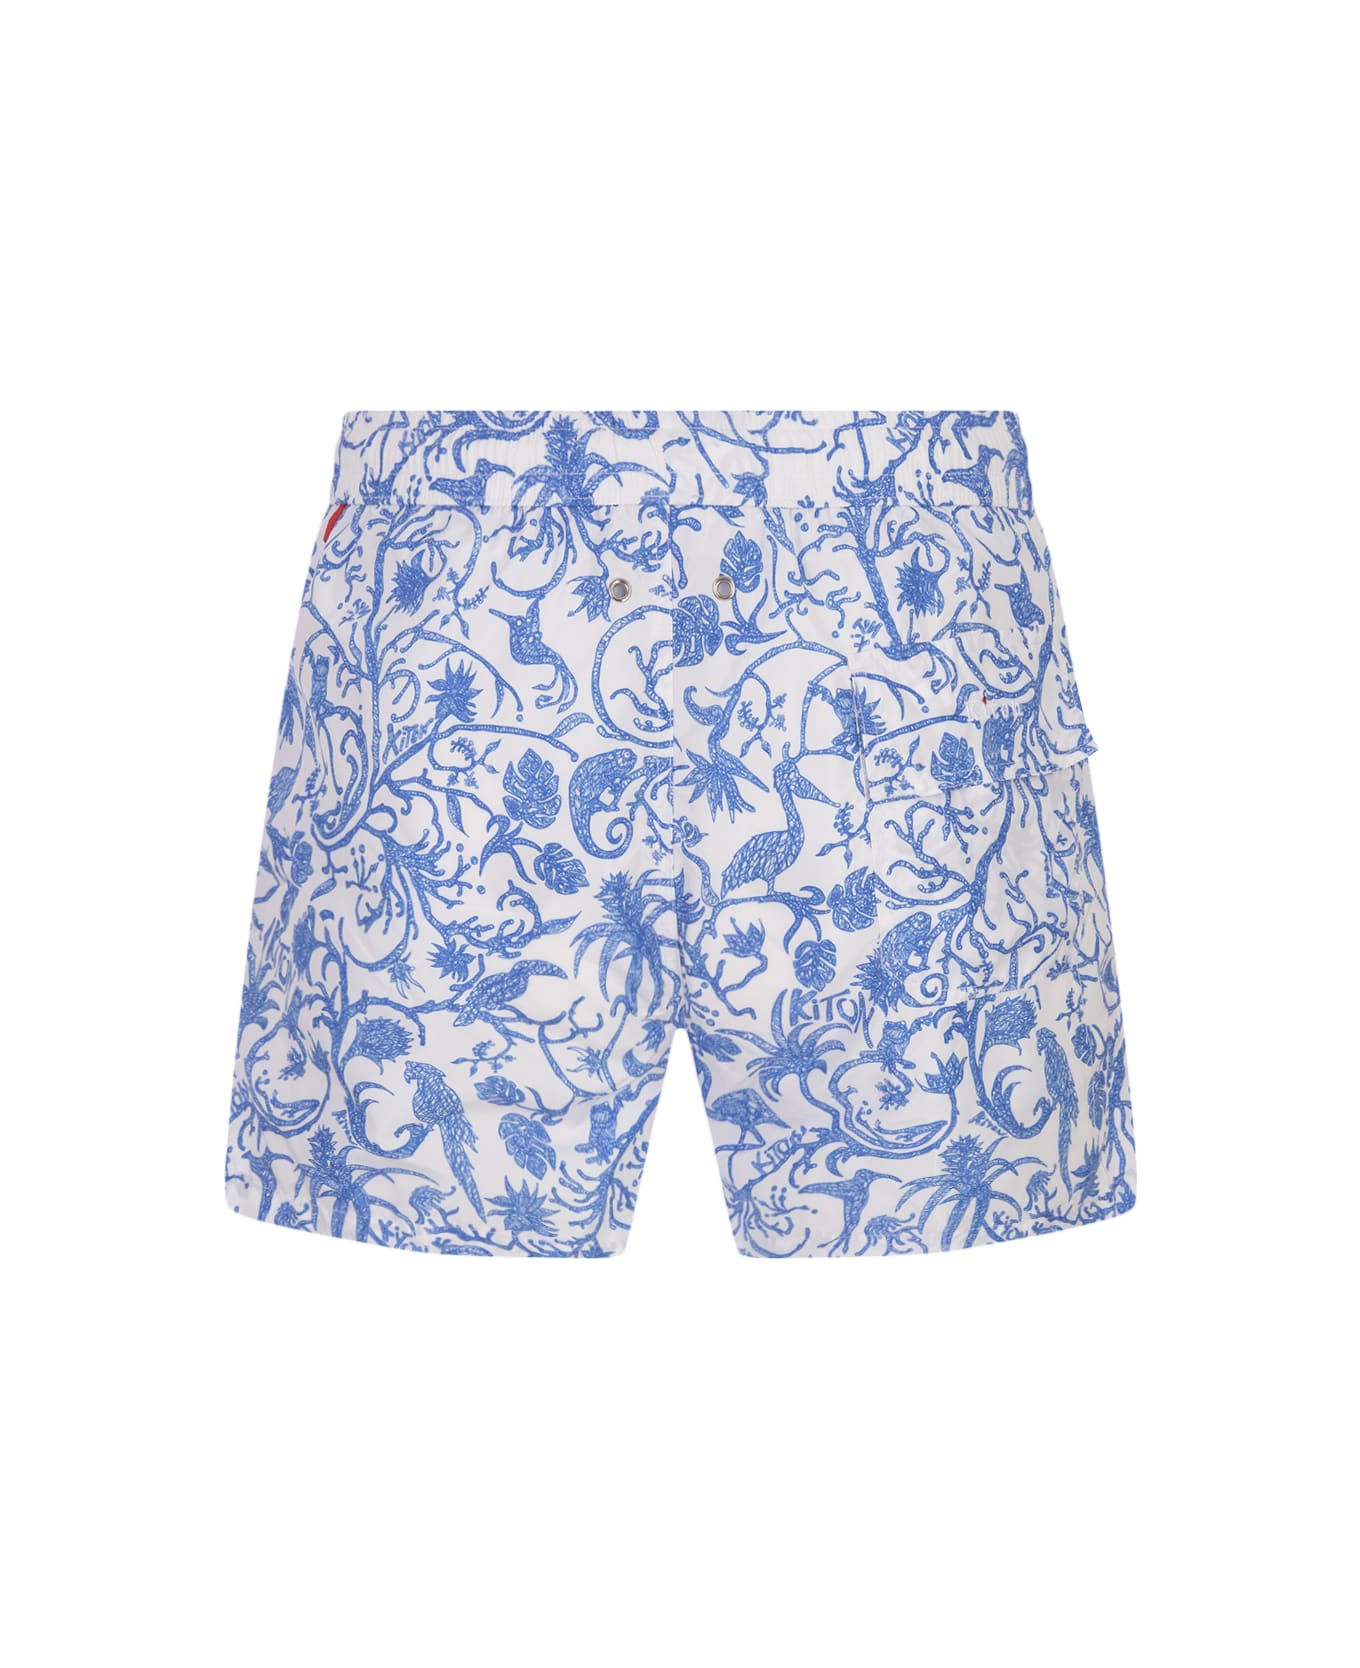 Kiton White Swim Shorts With Blue Fantasy Print - White